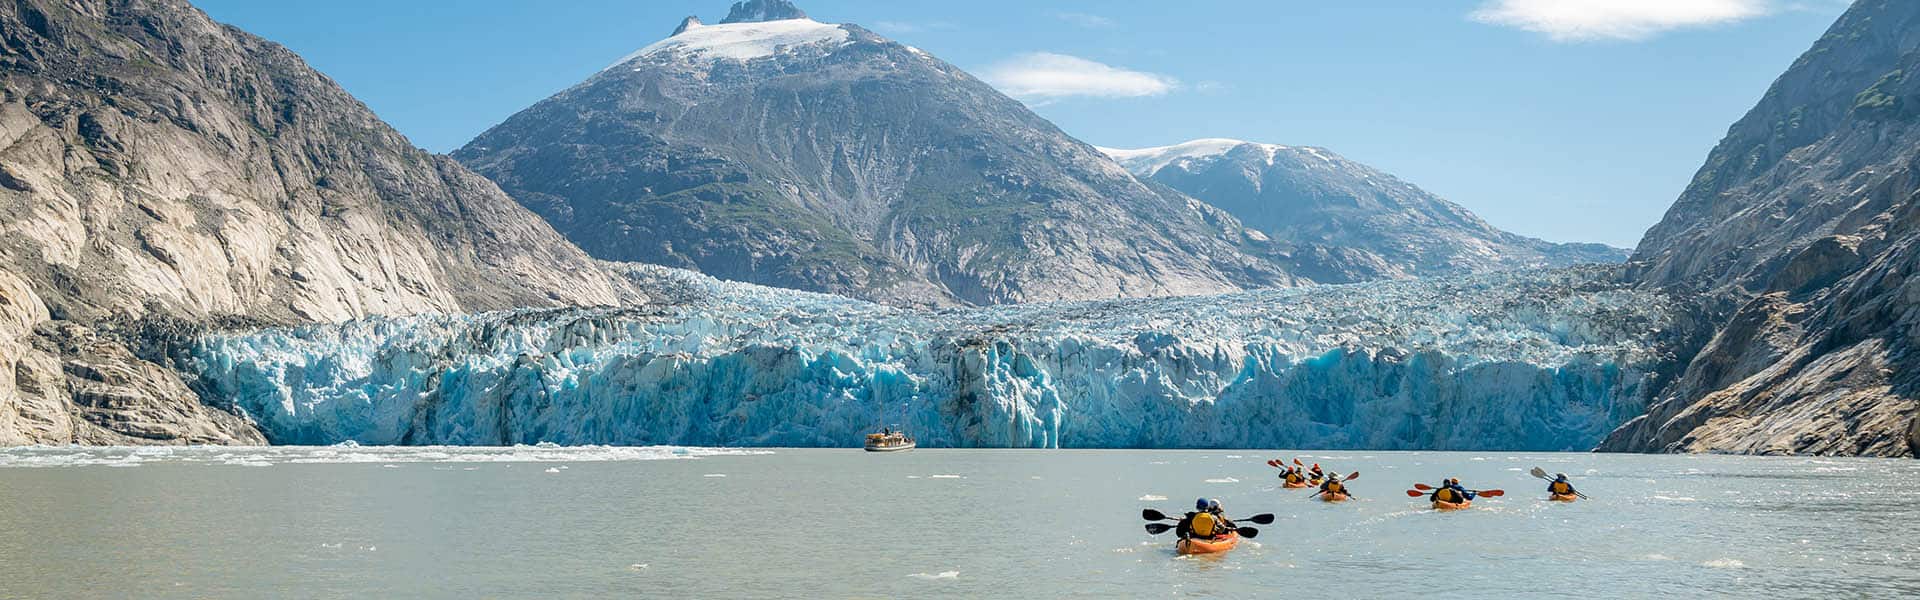 Alaska: Bahía de los Glaciares, Skagway y Juneau